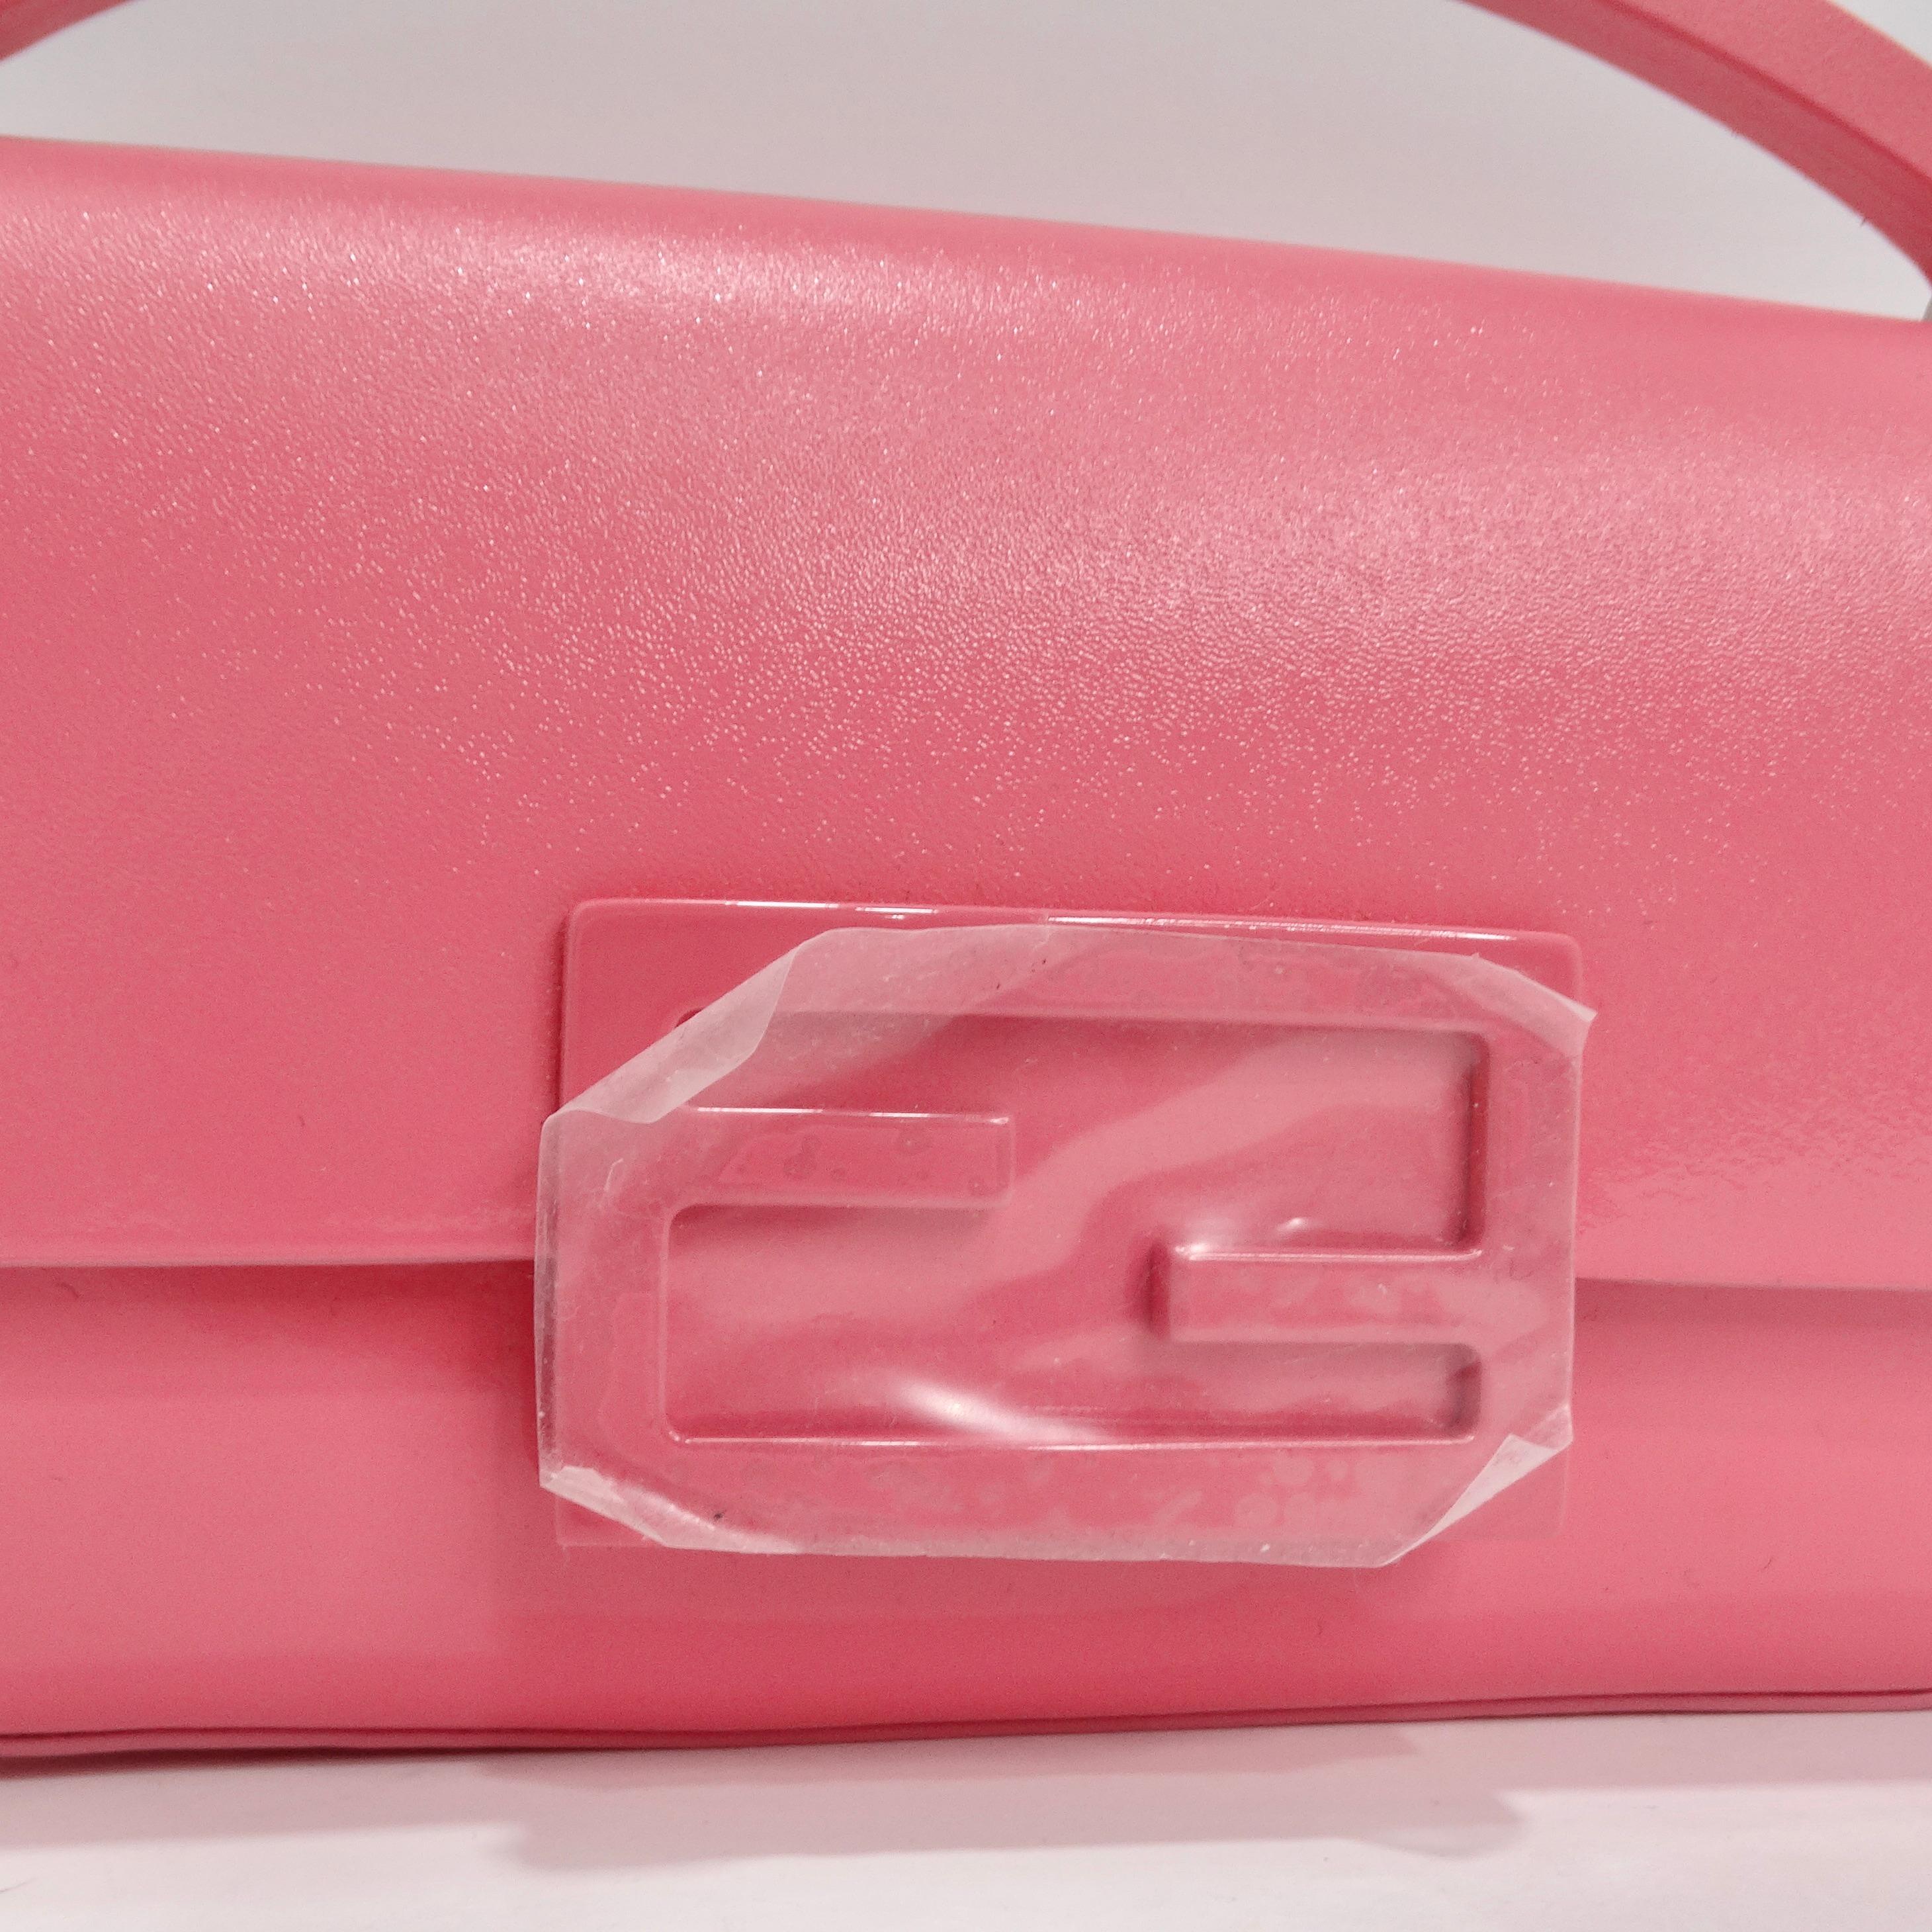 Die Baguette Phone Pouch von Fendi aus rosafarbenem Lackleder ist der Inbegriff von kompaktem und schickem Luxus. Diese Baguette Phone Pouch von Fendi ist eine Vision aus rosafarbenem Lackleder, eine Farbe, die Weiblichkeit und Eleganz ausstrahlt.